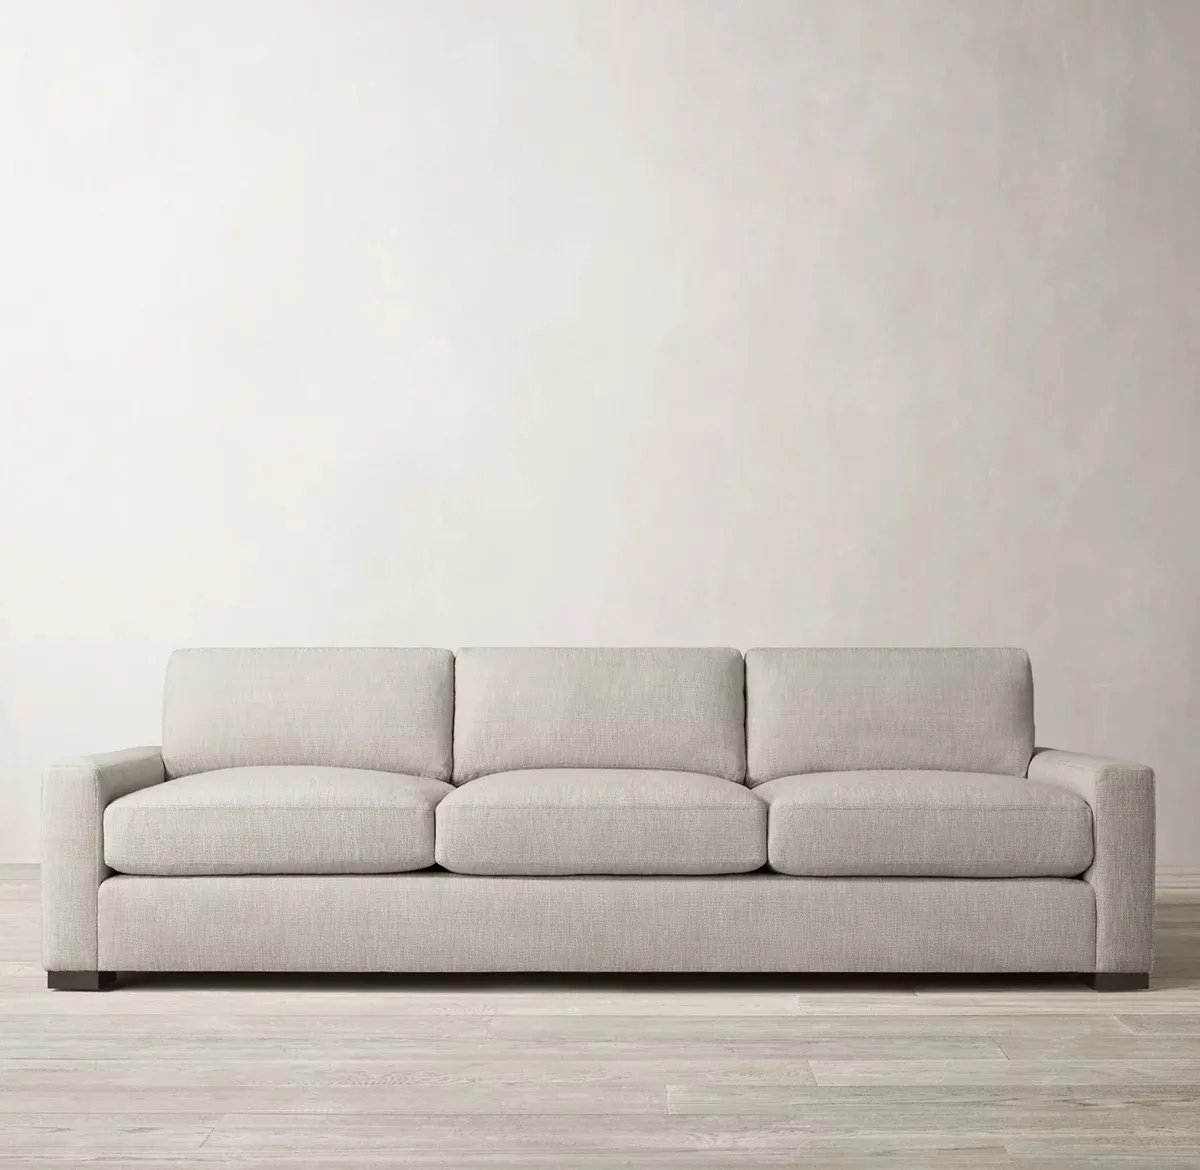 Ruang tamu sofa furnitur sederhana negosiasi seni kain, kustomisasi sofa multi orang kombinasi ruang model villa